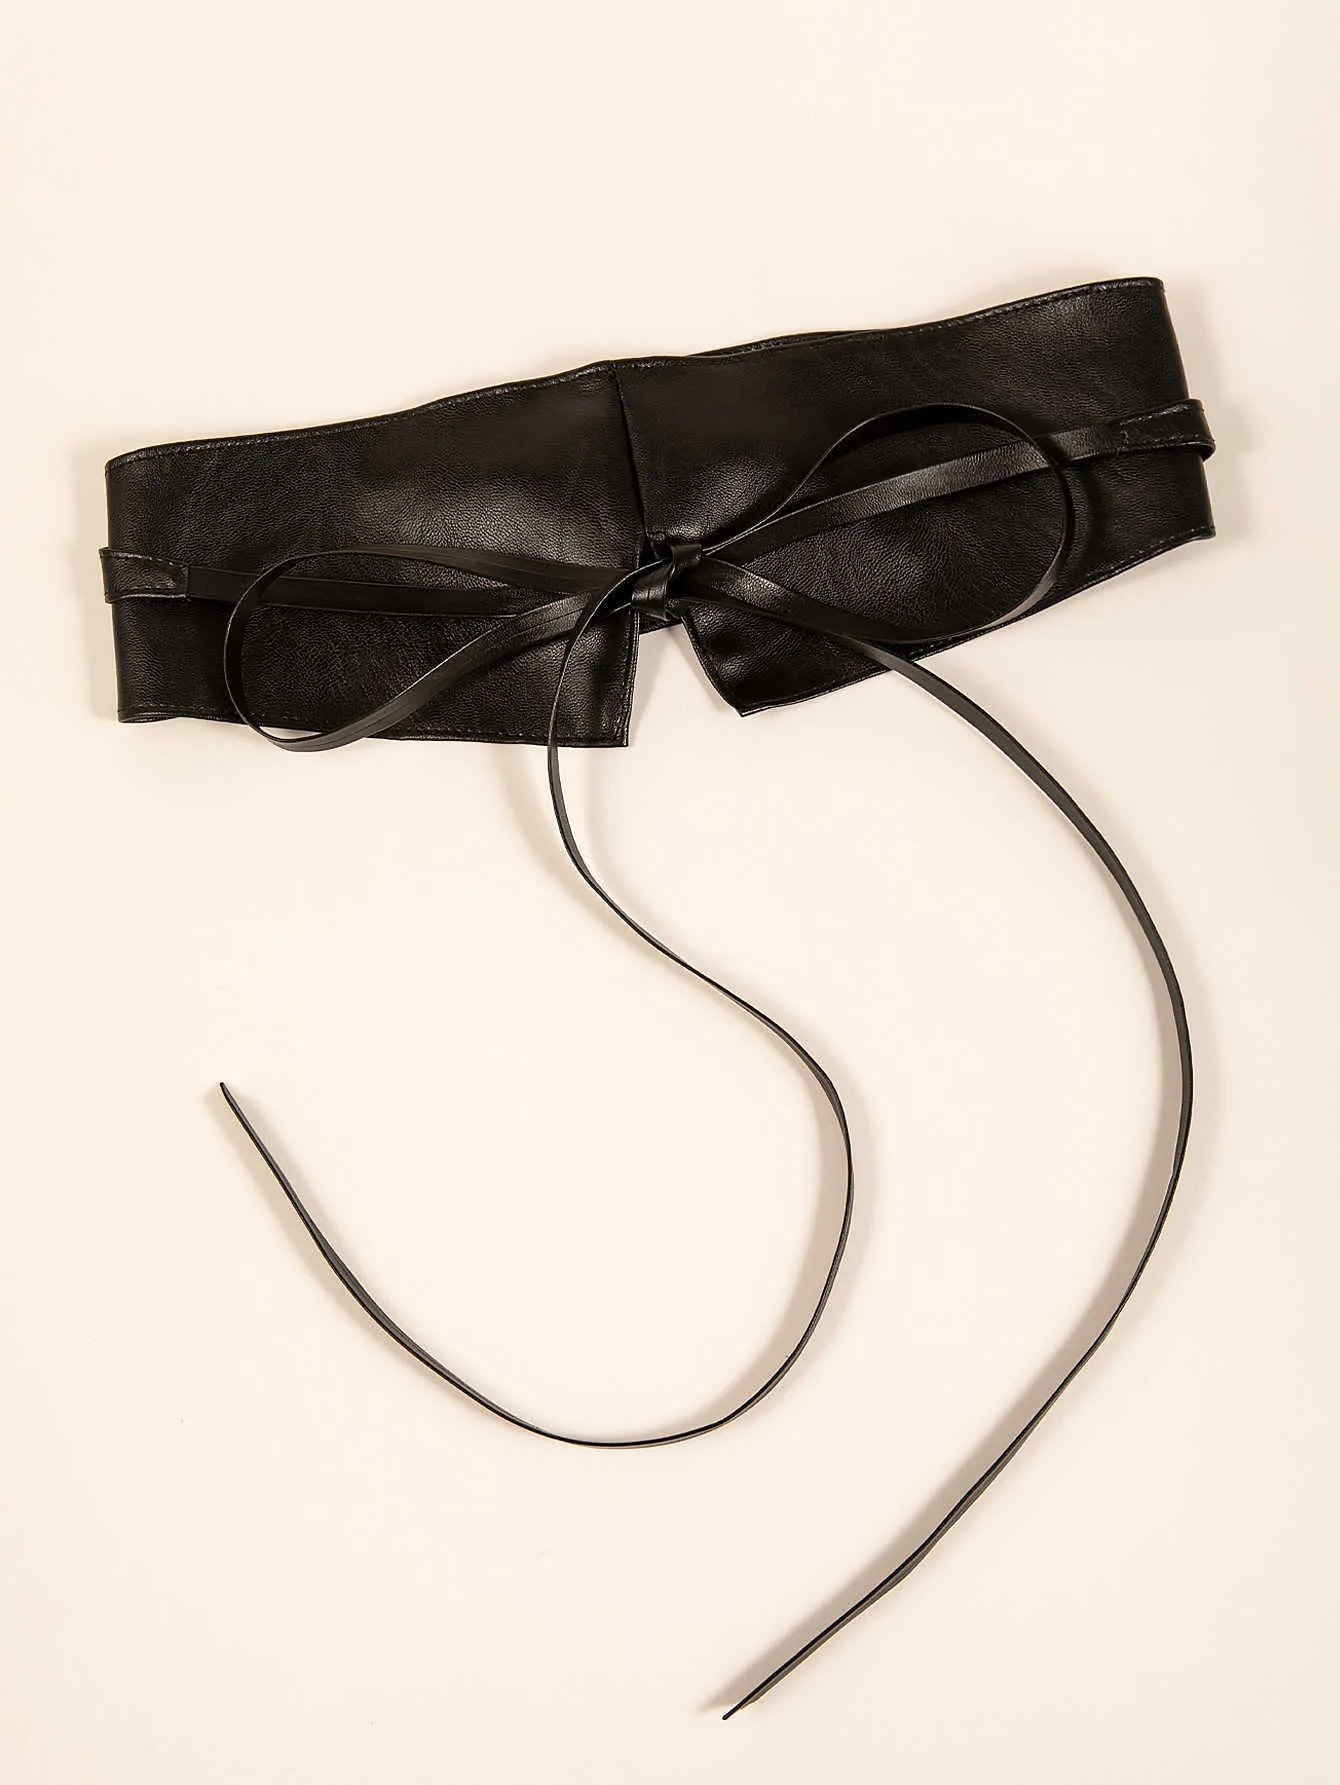 Corset Wide Pu Leather Belt Cummerbunds Lace-Up Belts for Women Tight High Waist Slimming Body Shaping Girdle Belt G1026